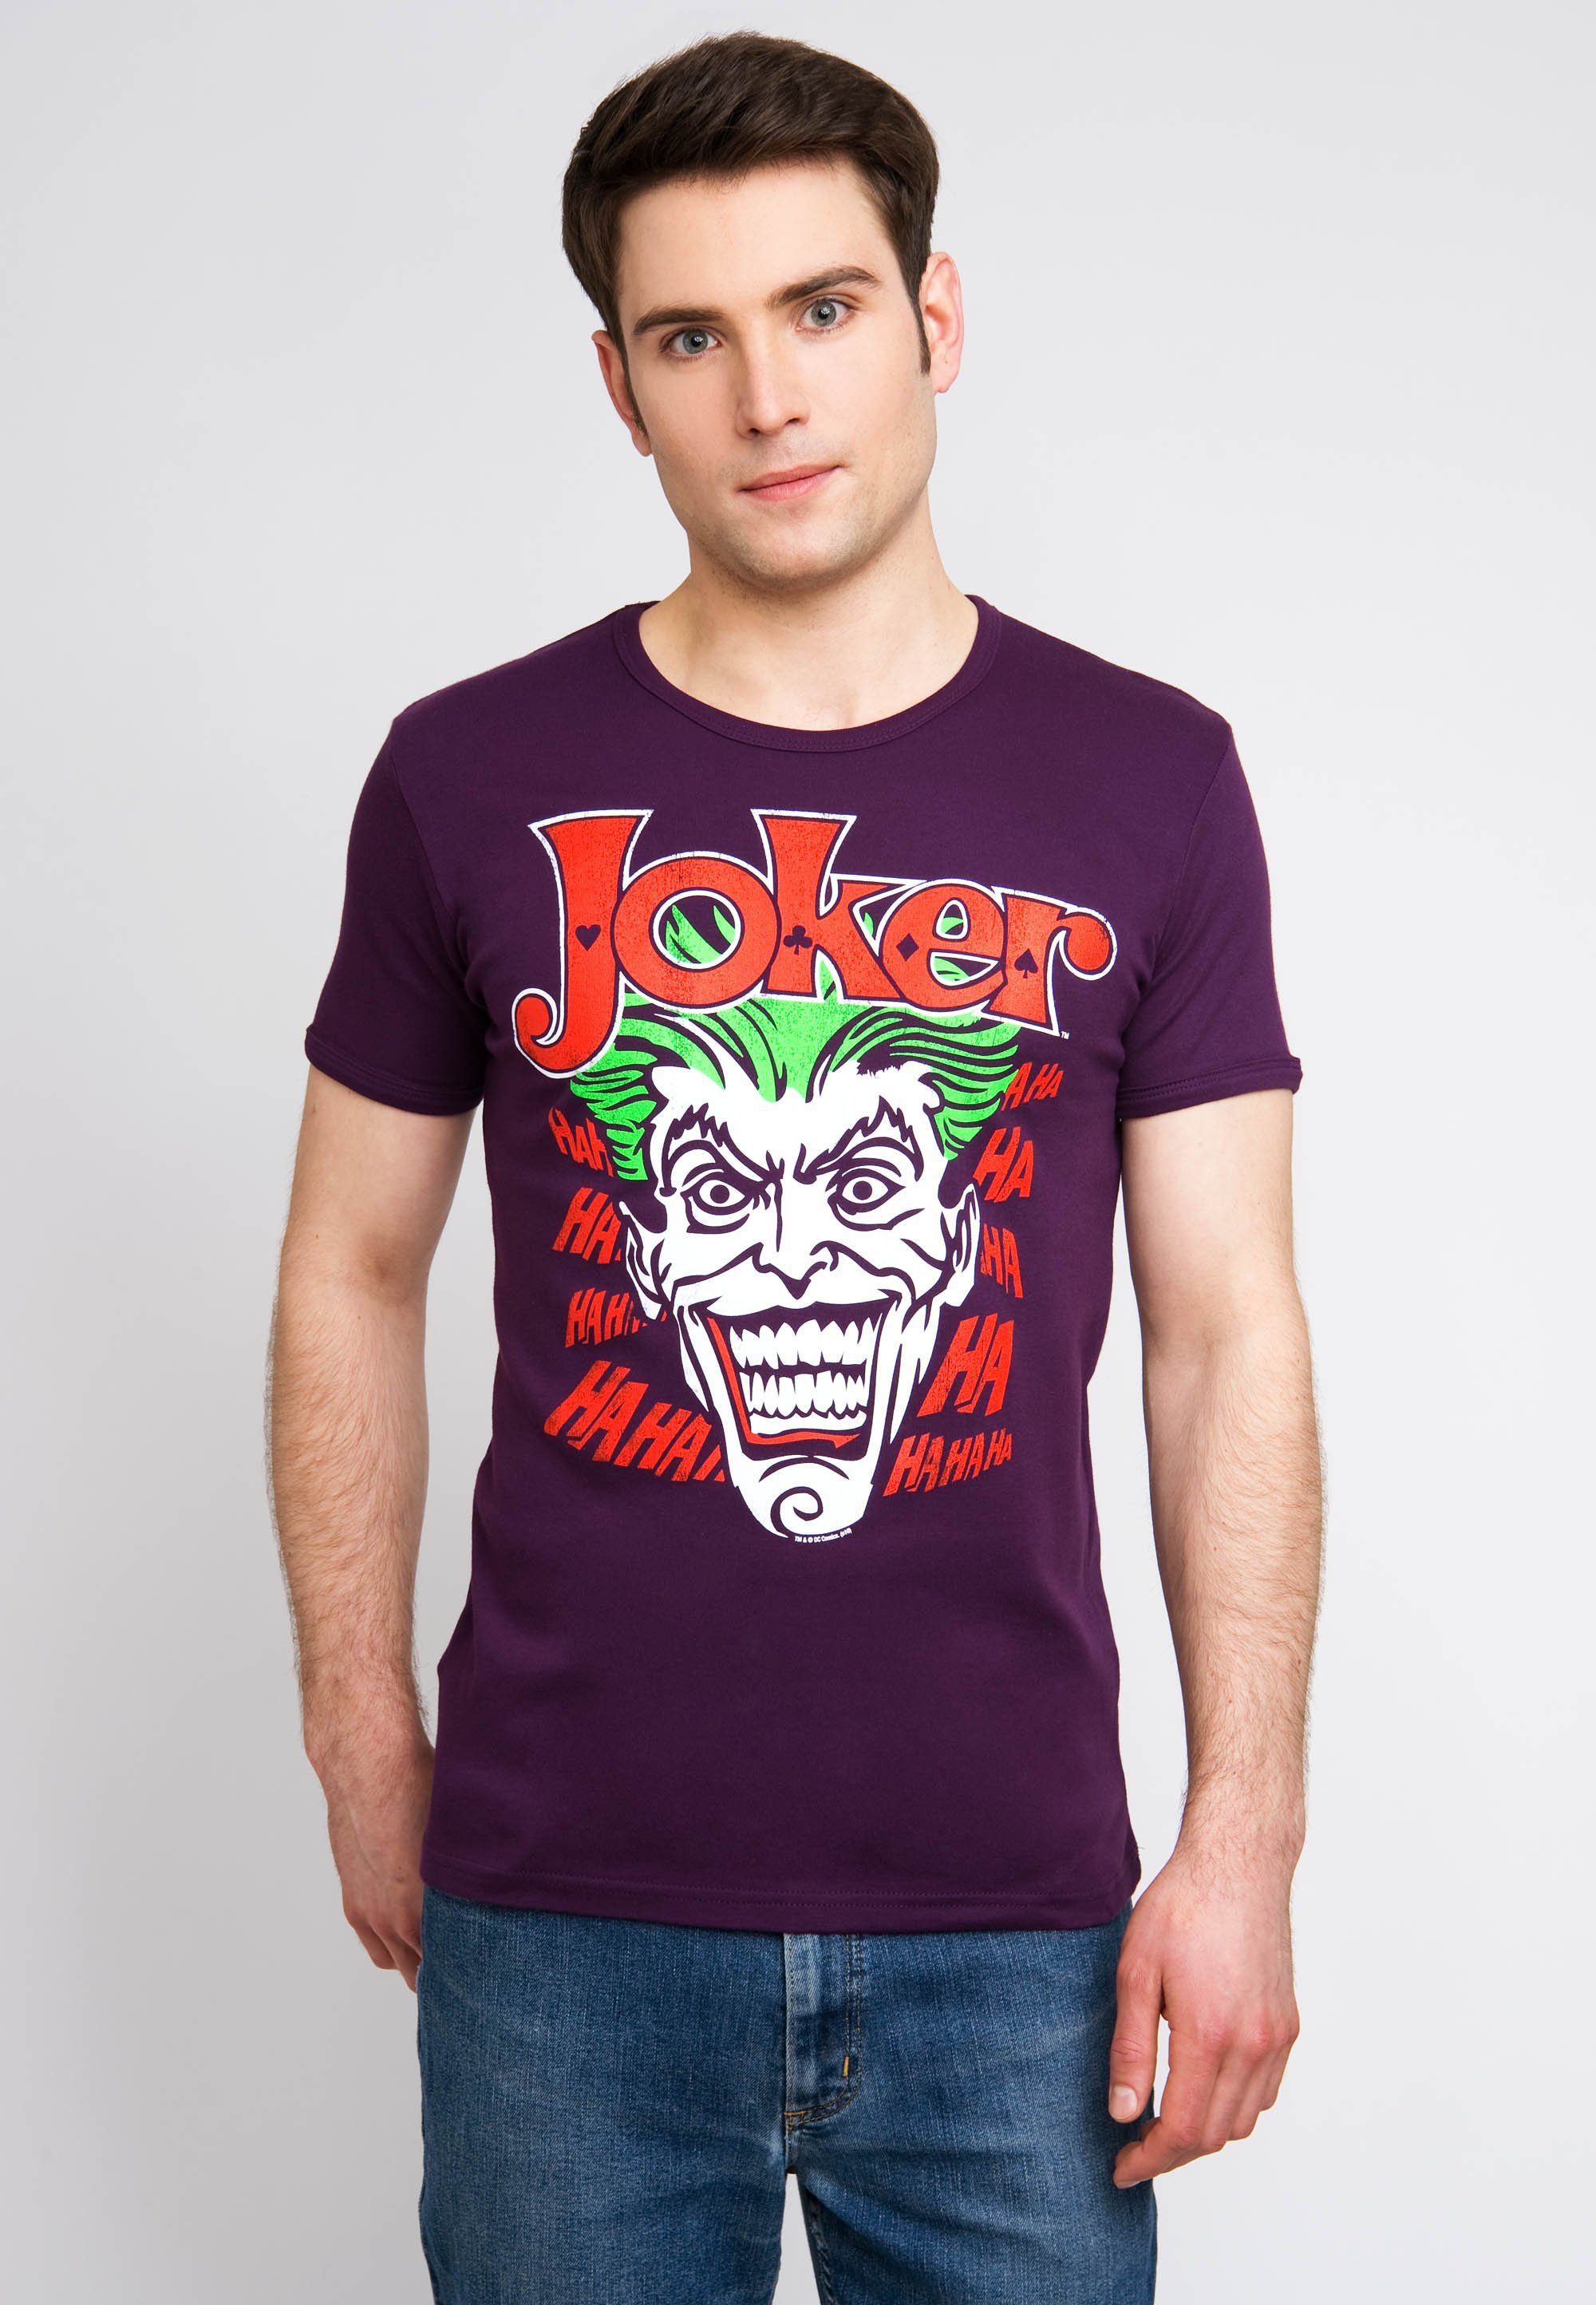 LOGOSHIRT T-Shirt Joker Batman mit Joker-Print bunt kultigem